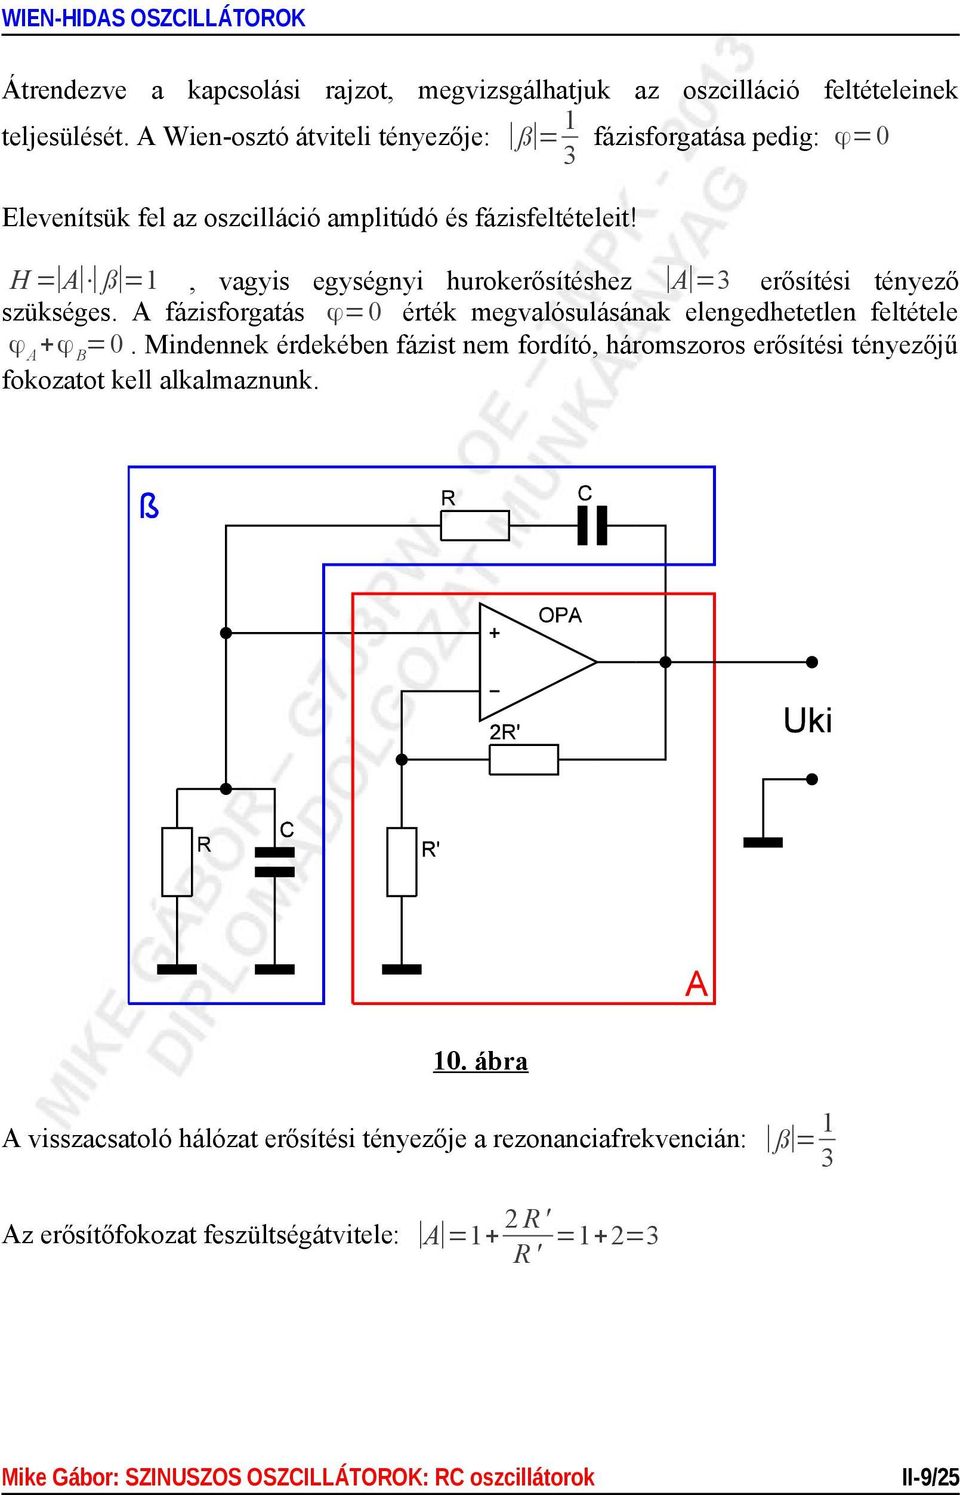 A Wien-osztó, mint a Wien-hidas oszcillátor szelektív hálózata - PDF Free  Download